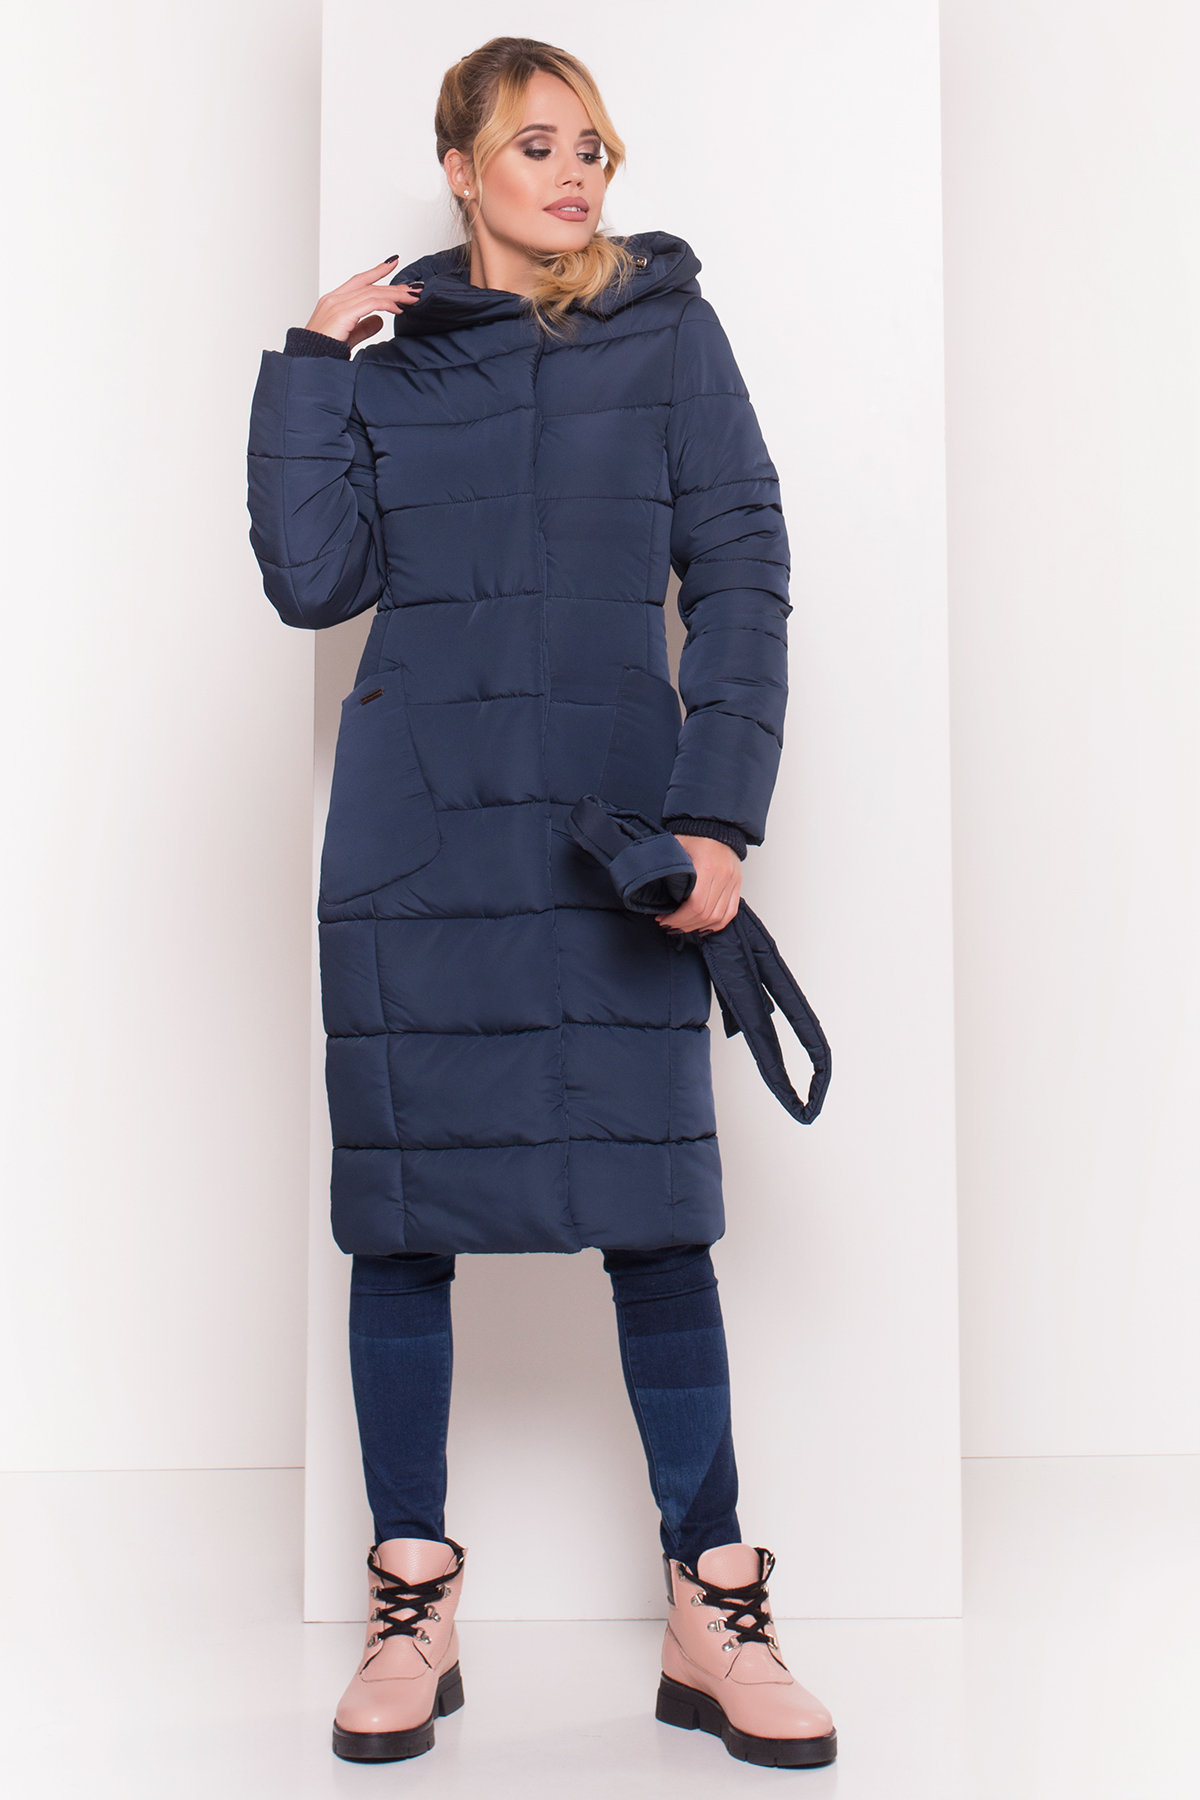 Пуховик-пальто с поясом Жако 5540 АРТ. 38050 Цвет: Темно-синий - фото 4, интернет магазин tm-modus.ru